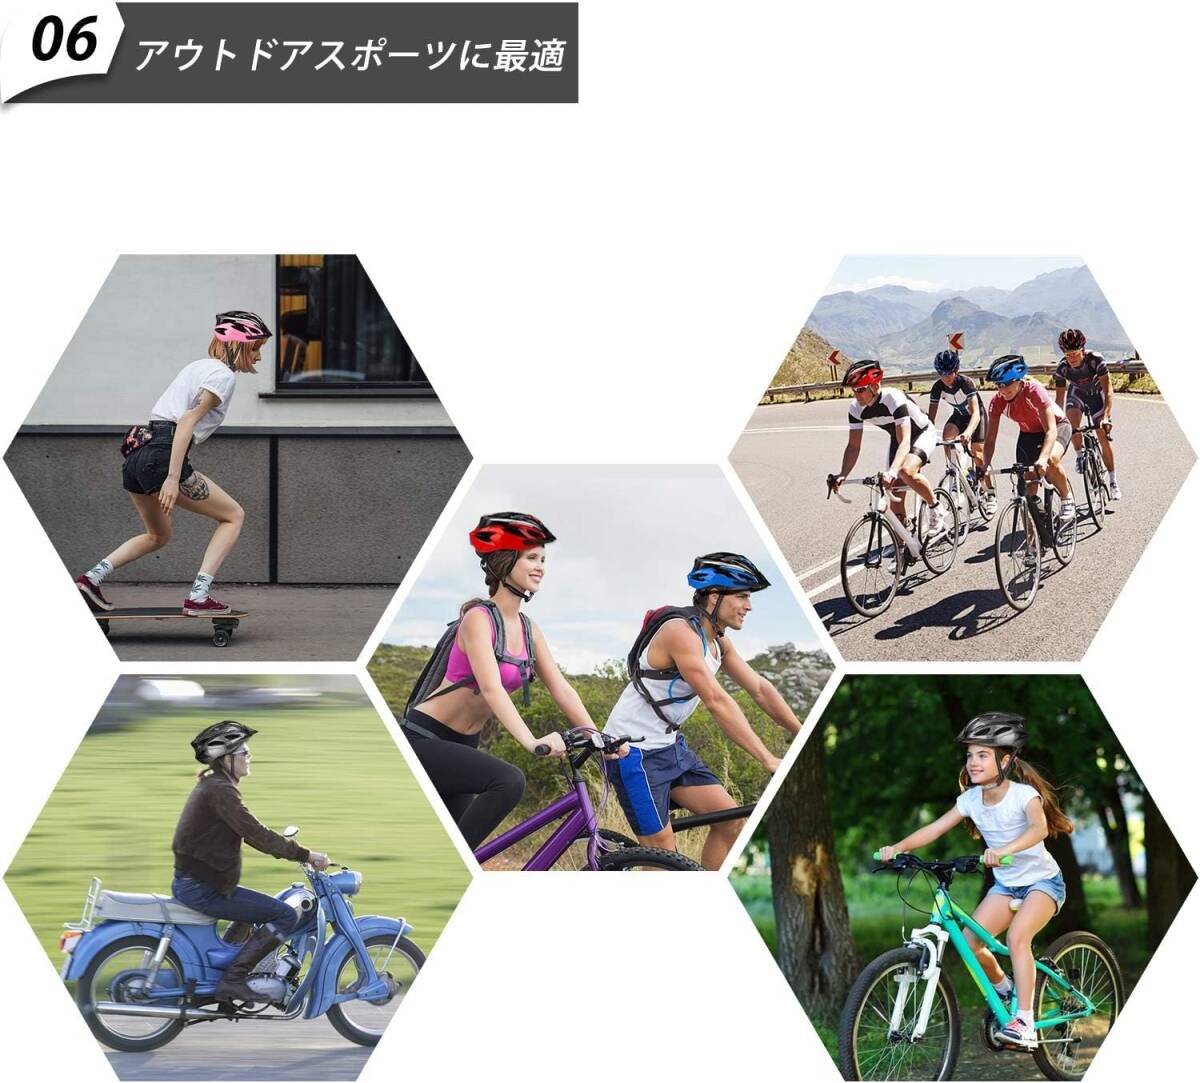 自転車ヘルメット 高耐衝撃性スポーツヘルメット 通気性 サイズ調整可能 サイクルヘルメット 男女兼用 54-62 cm ネイビーxピンク_画像7